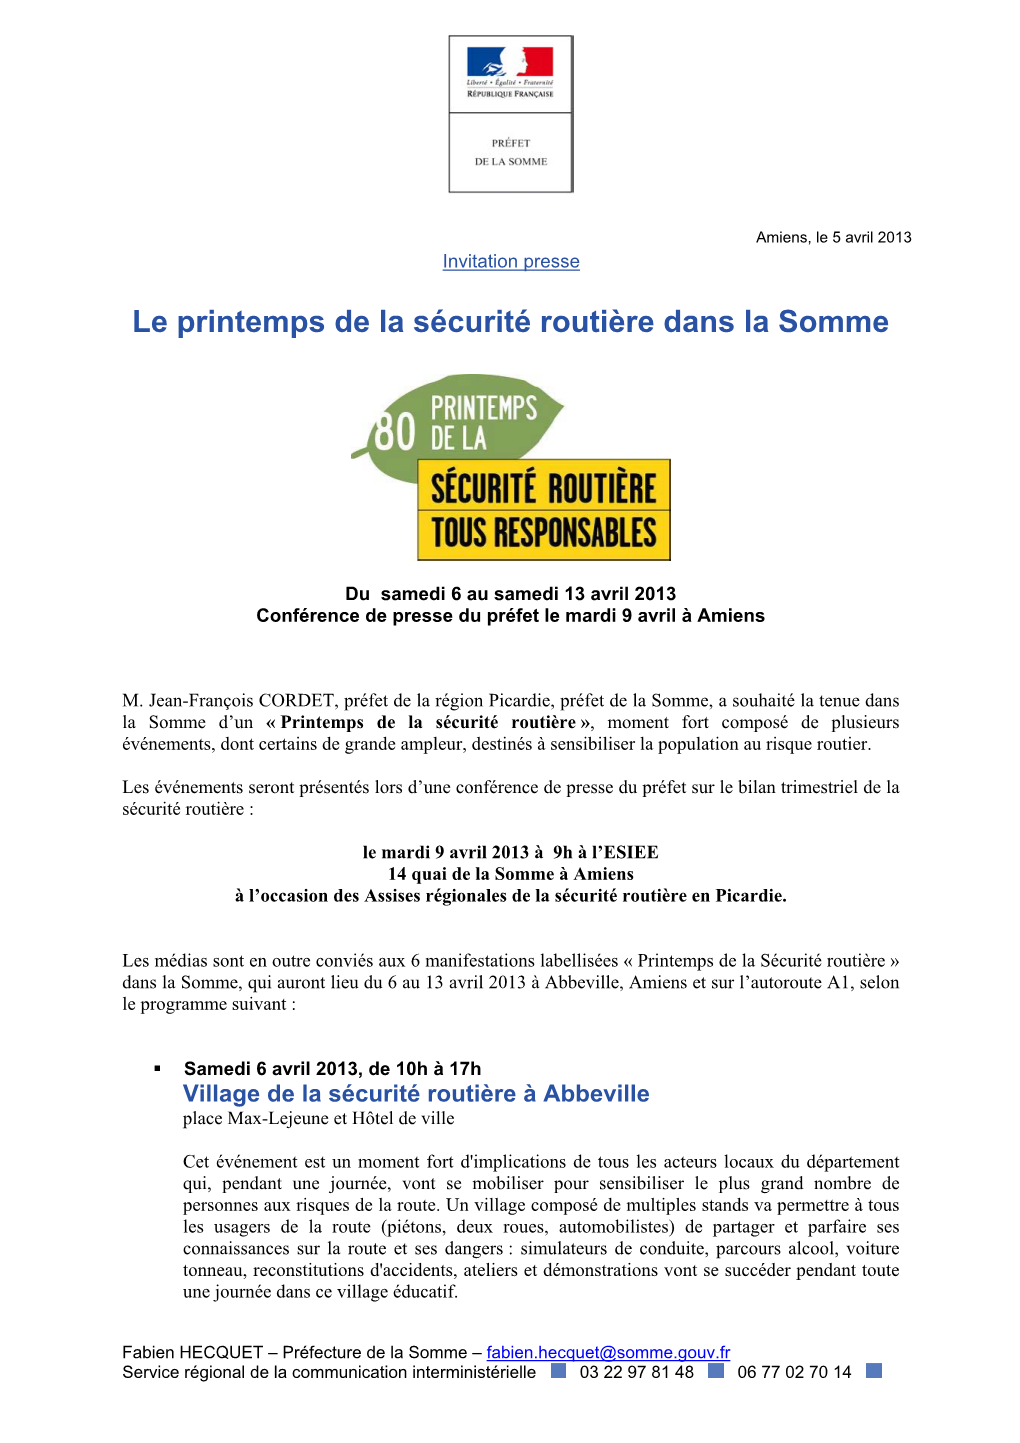 Amiens, Le 5 Avril 2013 Invitation Presse